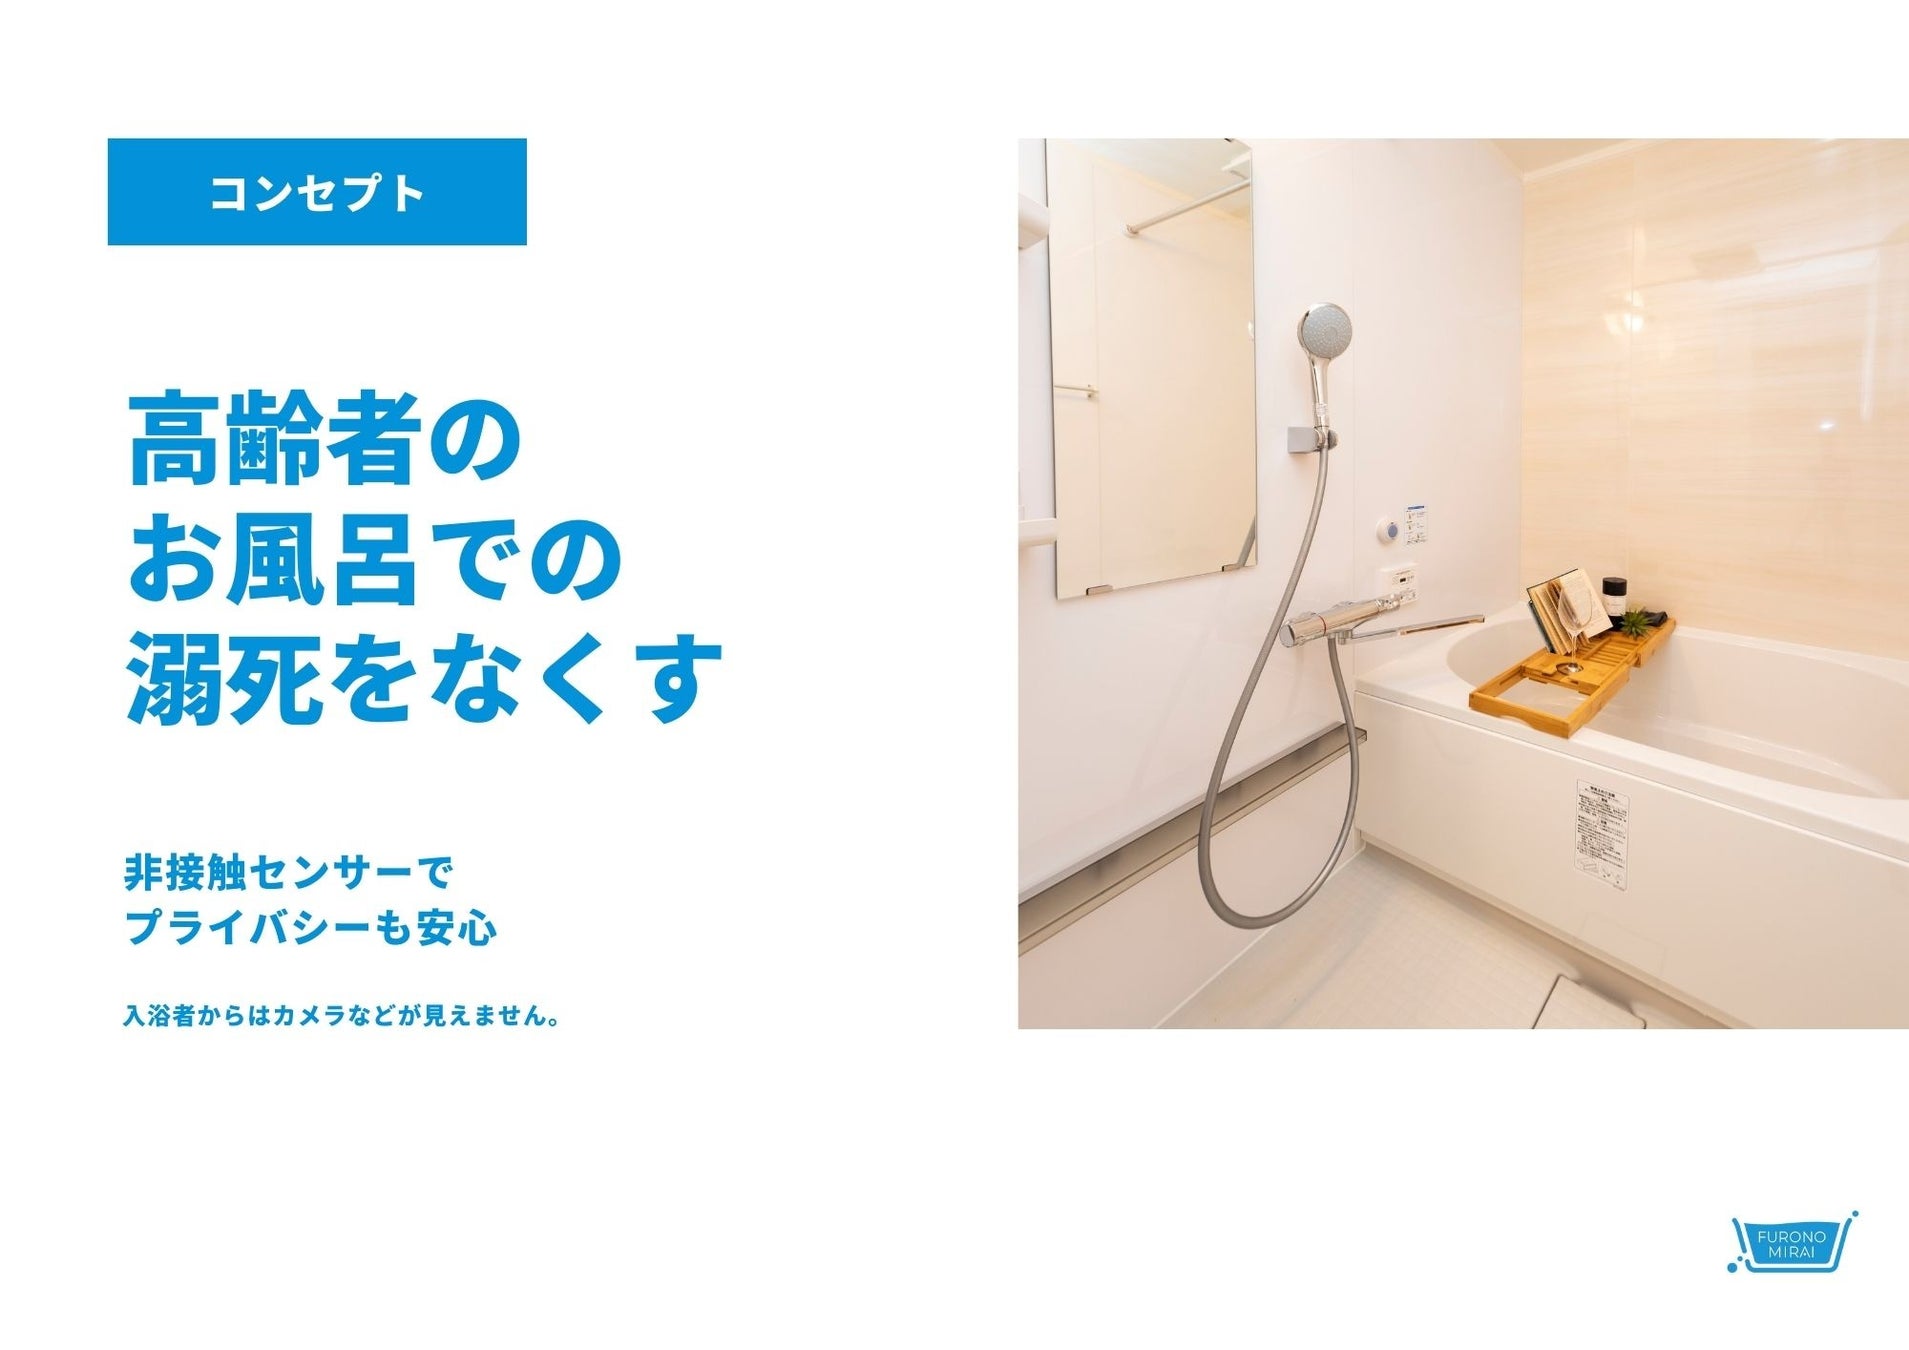 「フロノミライ」グッドデザイン賞を受賞～溺水予防のために強制排水するスマート浴槽のサブ画像2